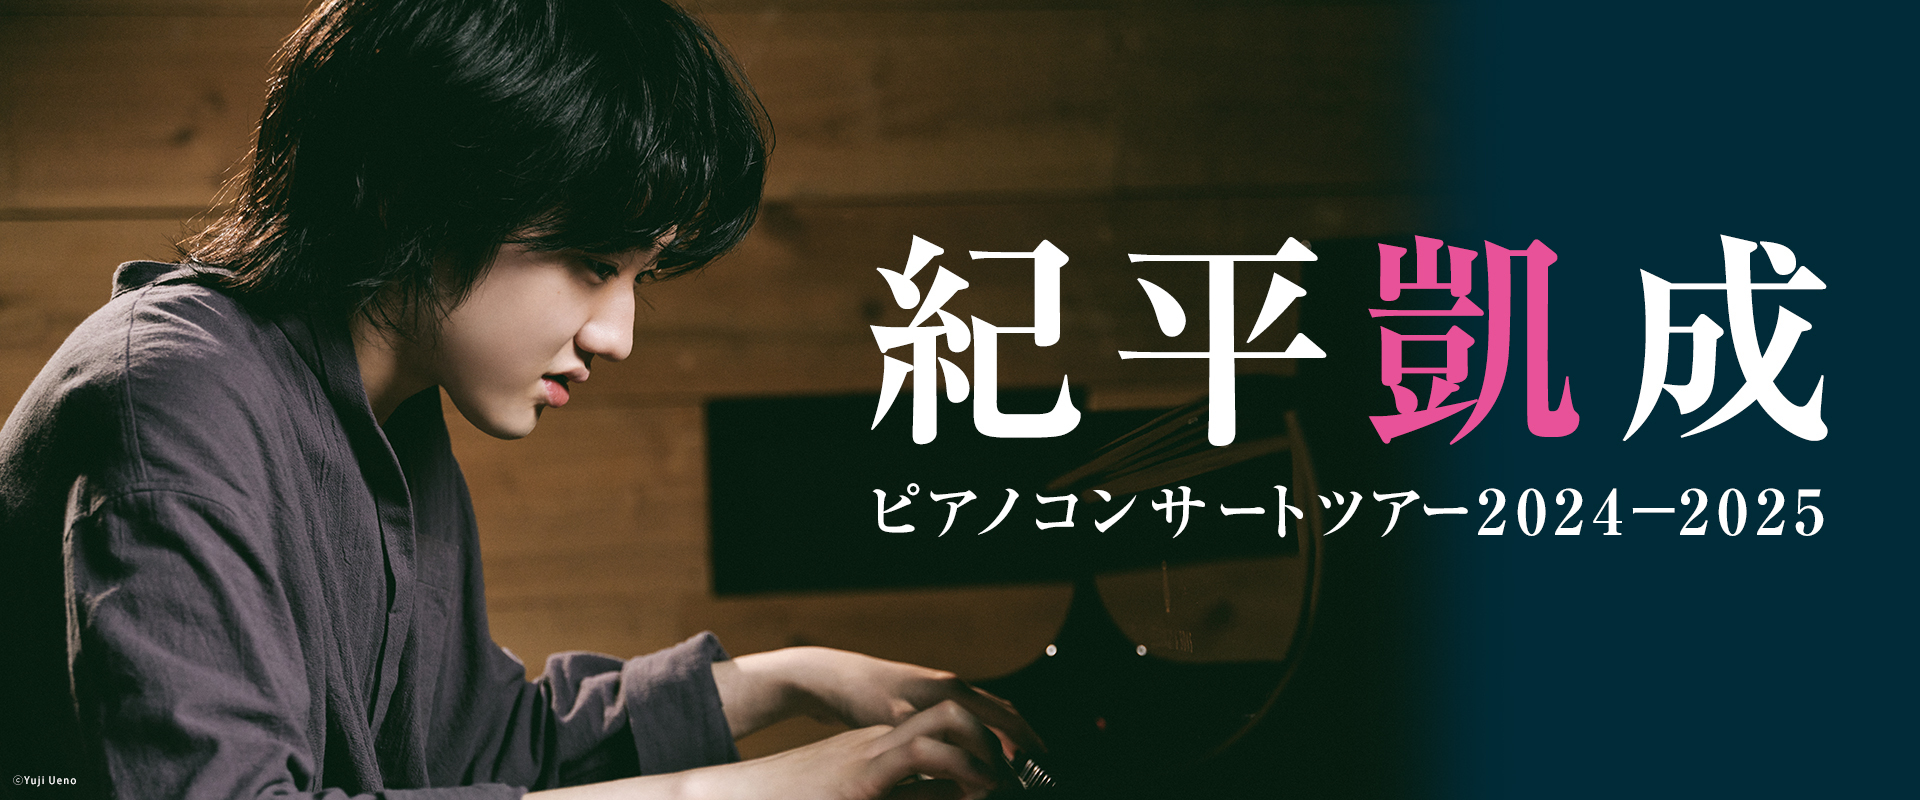 紀平凱成 ピアノコンサートツアー2024-2025